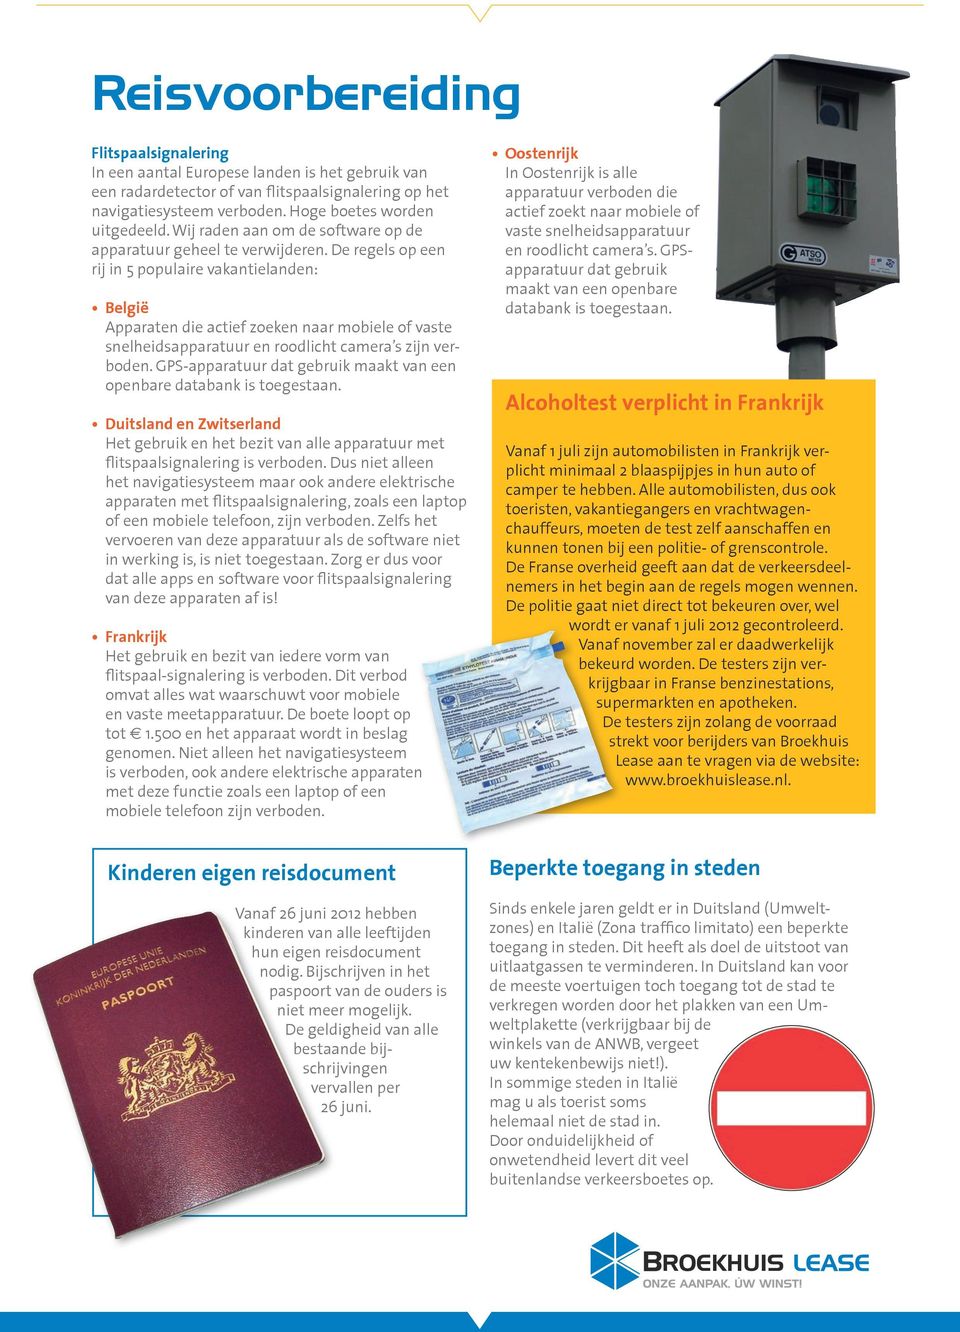 De regels op een rij in 5 populaire vakantielanden: België Apparaten die actief zoeken naar mobiele of vaste snelheidsapparatuur en roodlicht camera s zijn verboden.